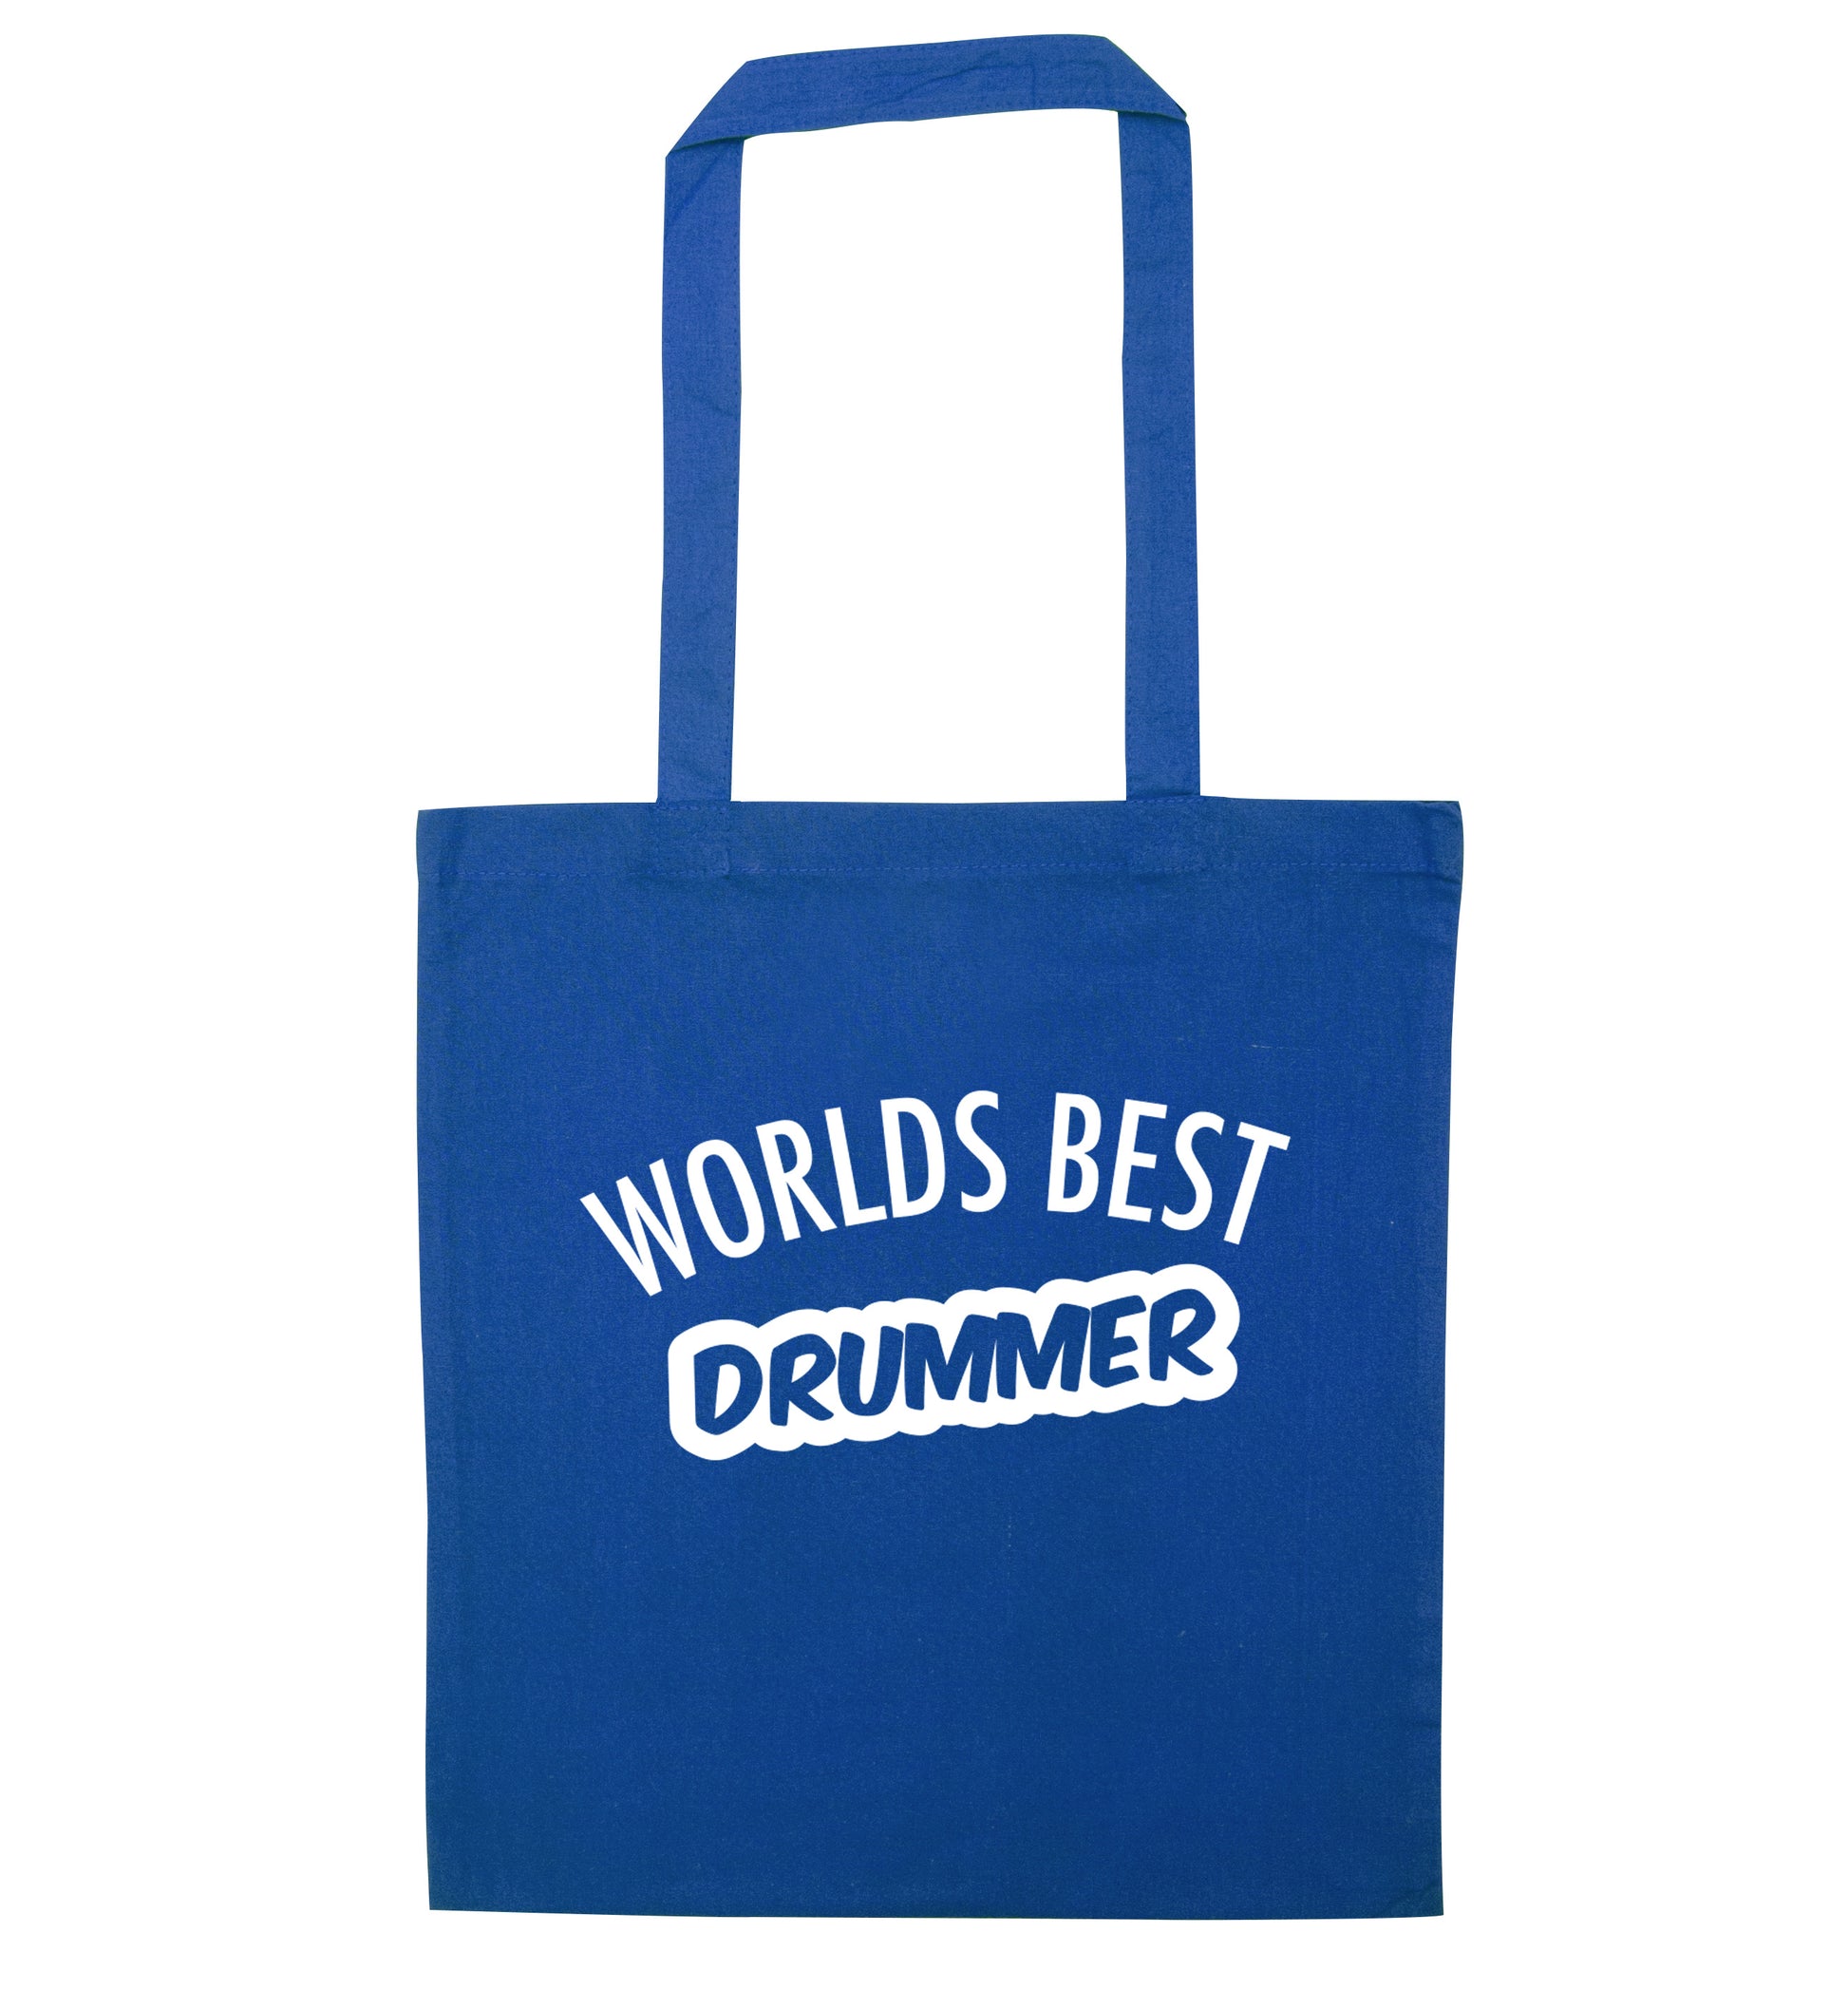 Worlds best drummer blue tote bag